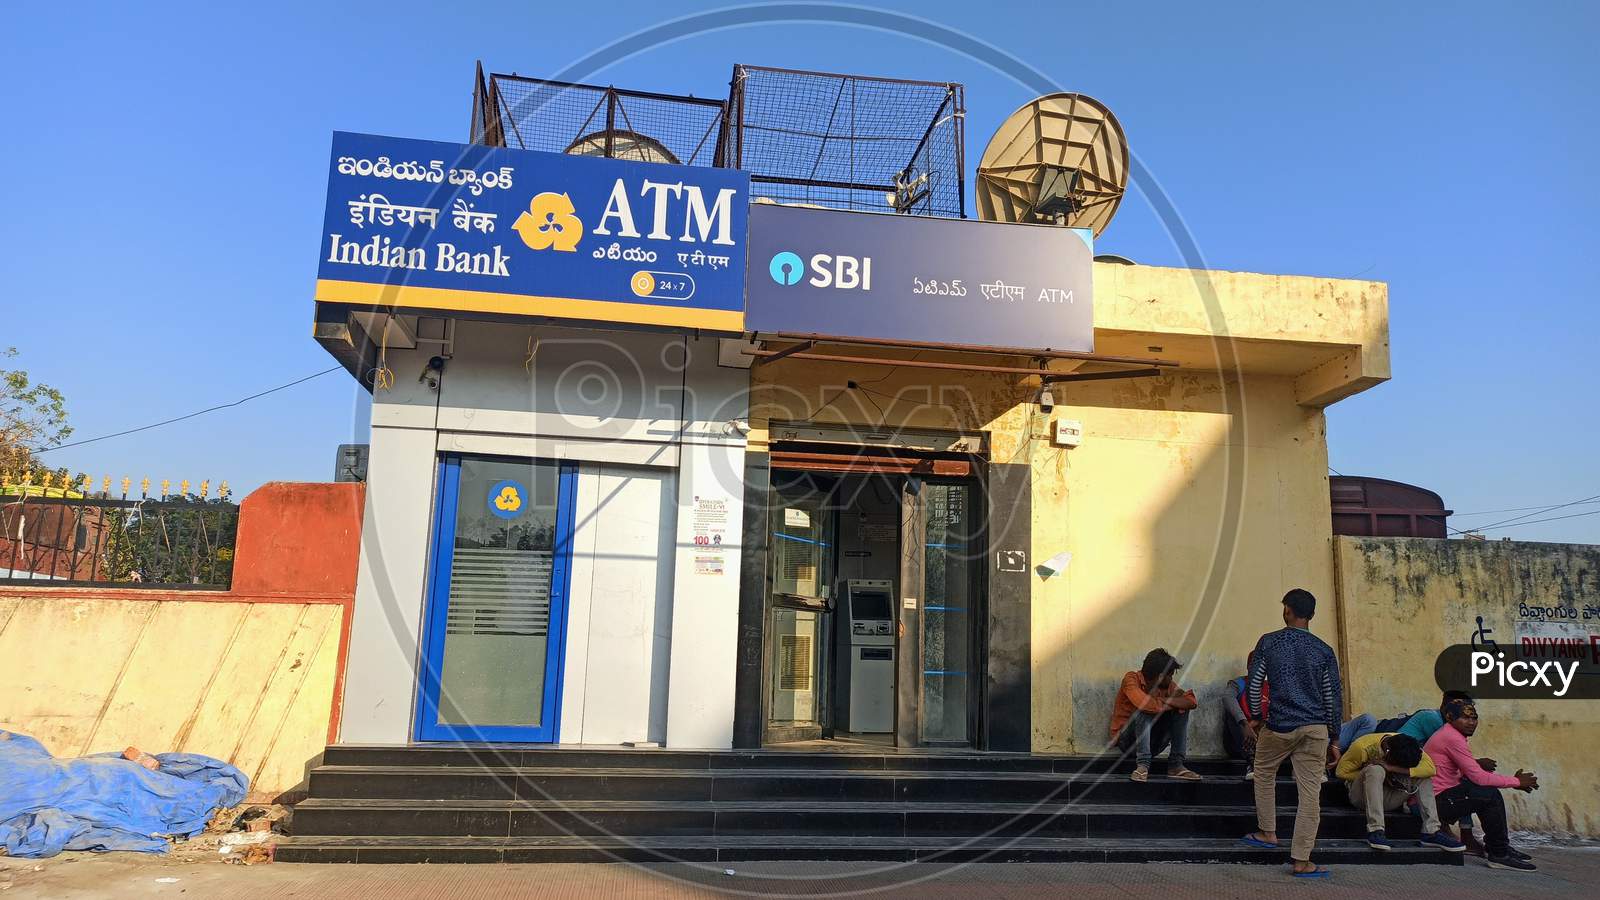 Indian Bank ATM & SBI ATM at Warangal City